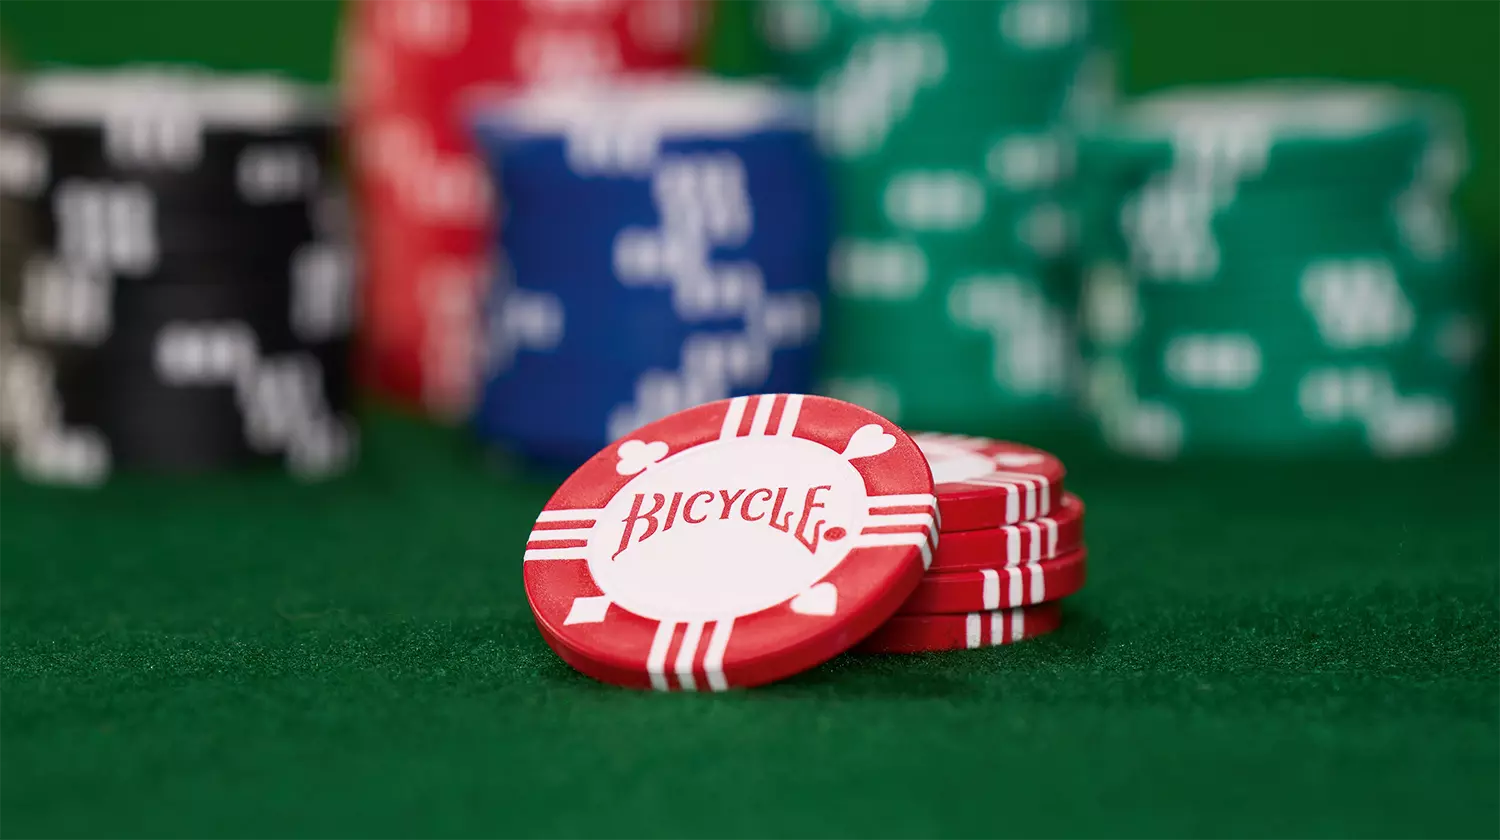 Die Bicycle originals Poker Chips liegen ausgepackt auf einem grünen Pokertisch.